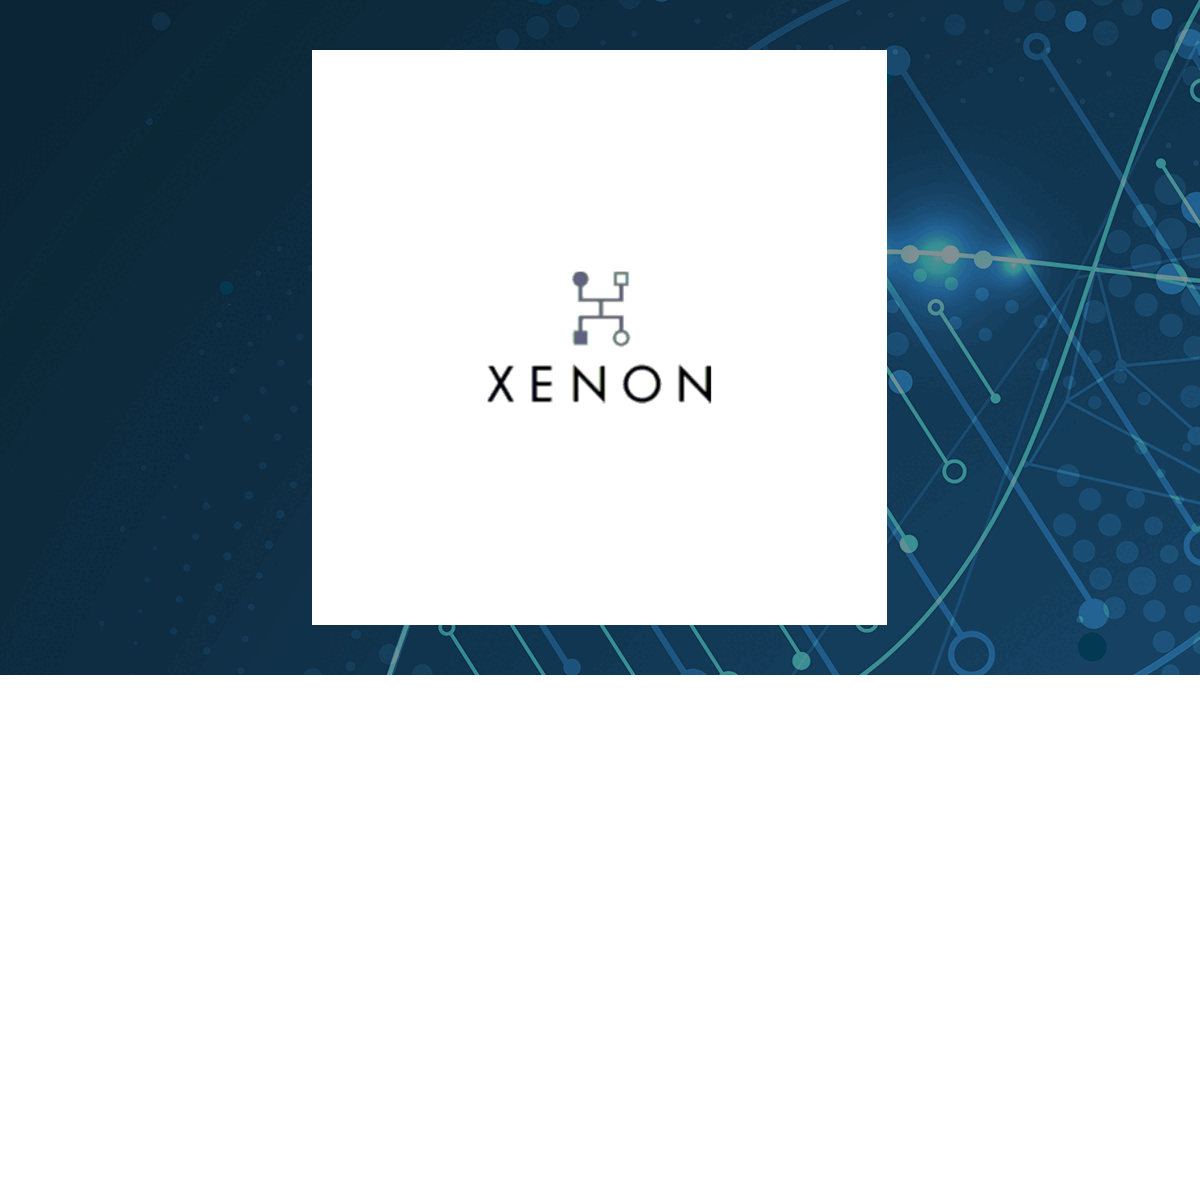 Xenon Pharmaceuticals logo